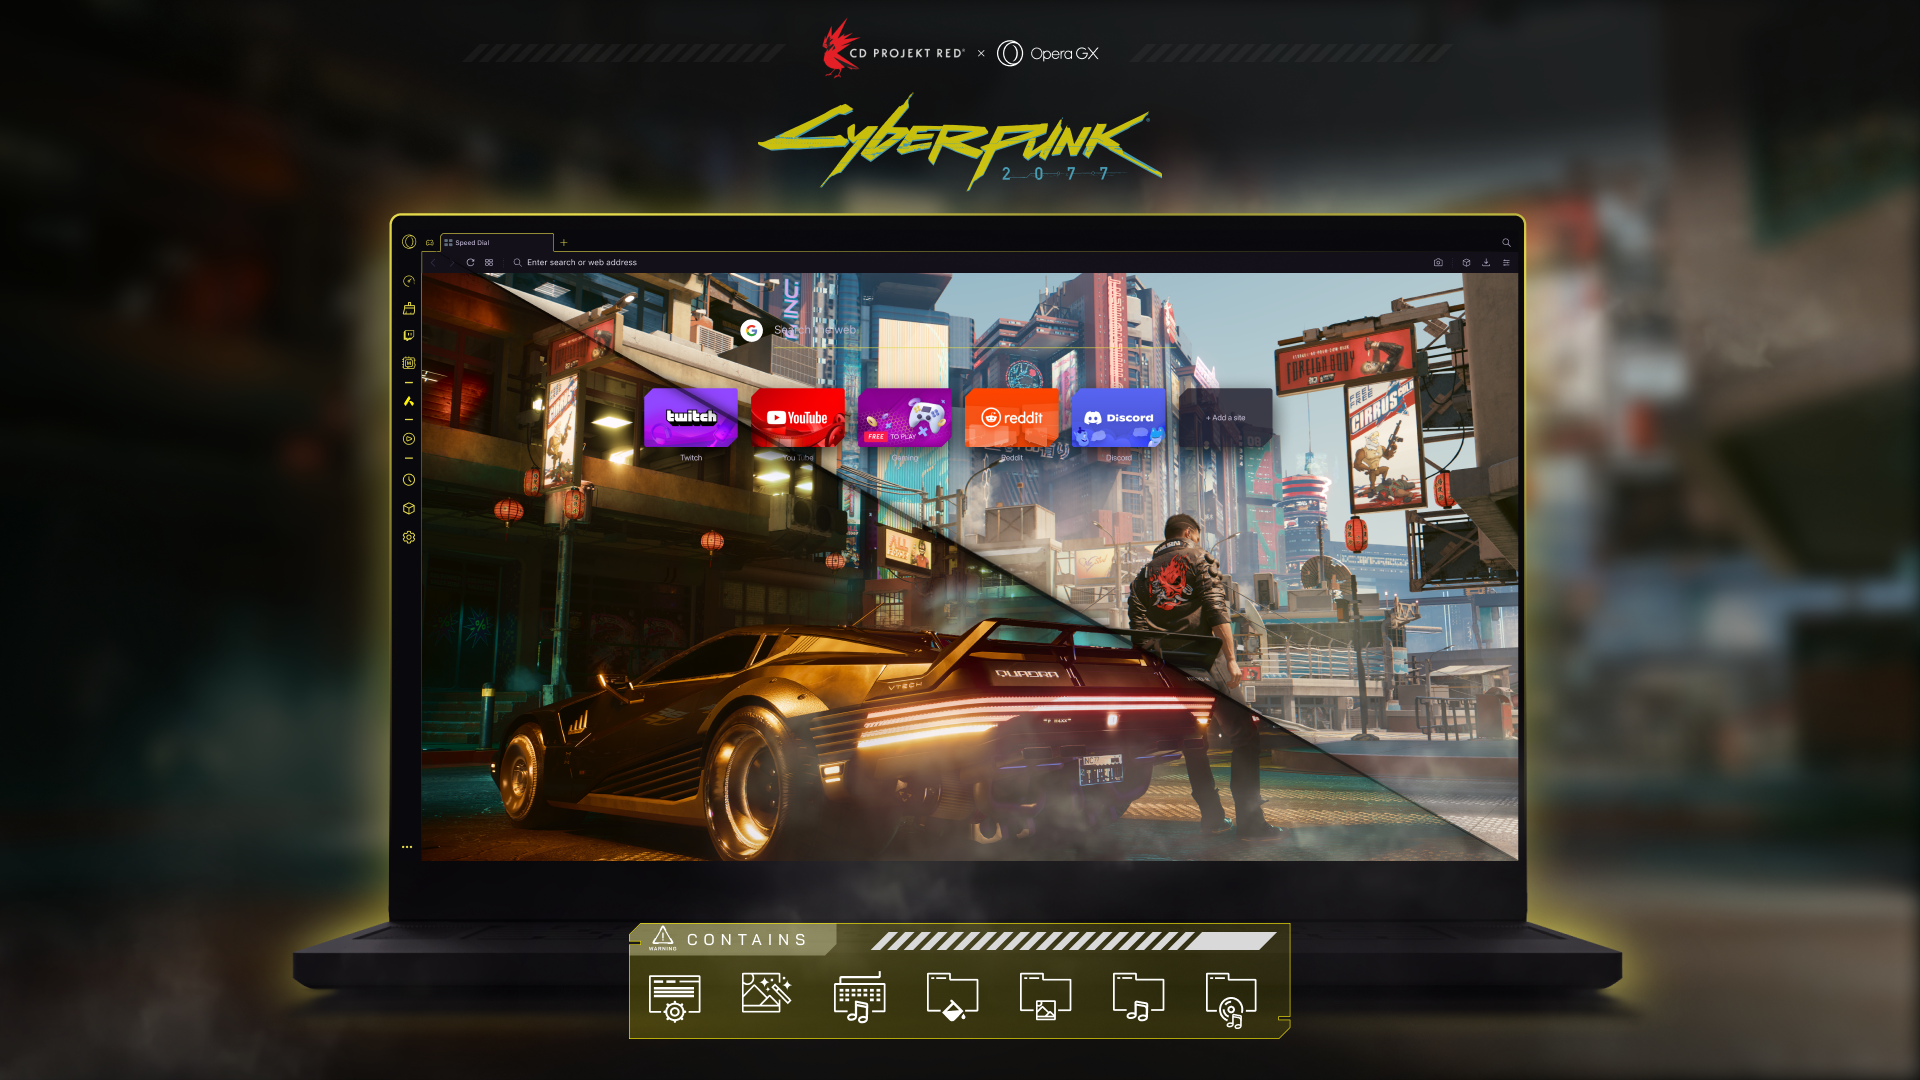 Navegador Opera GX ganha mod oficial de Cyberpunk 2077